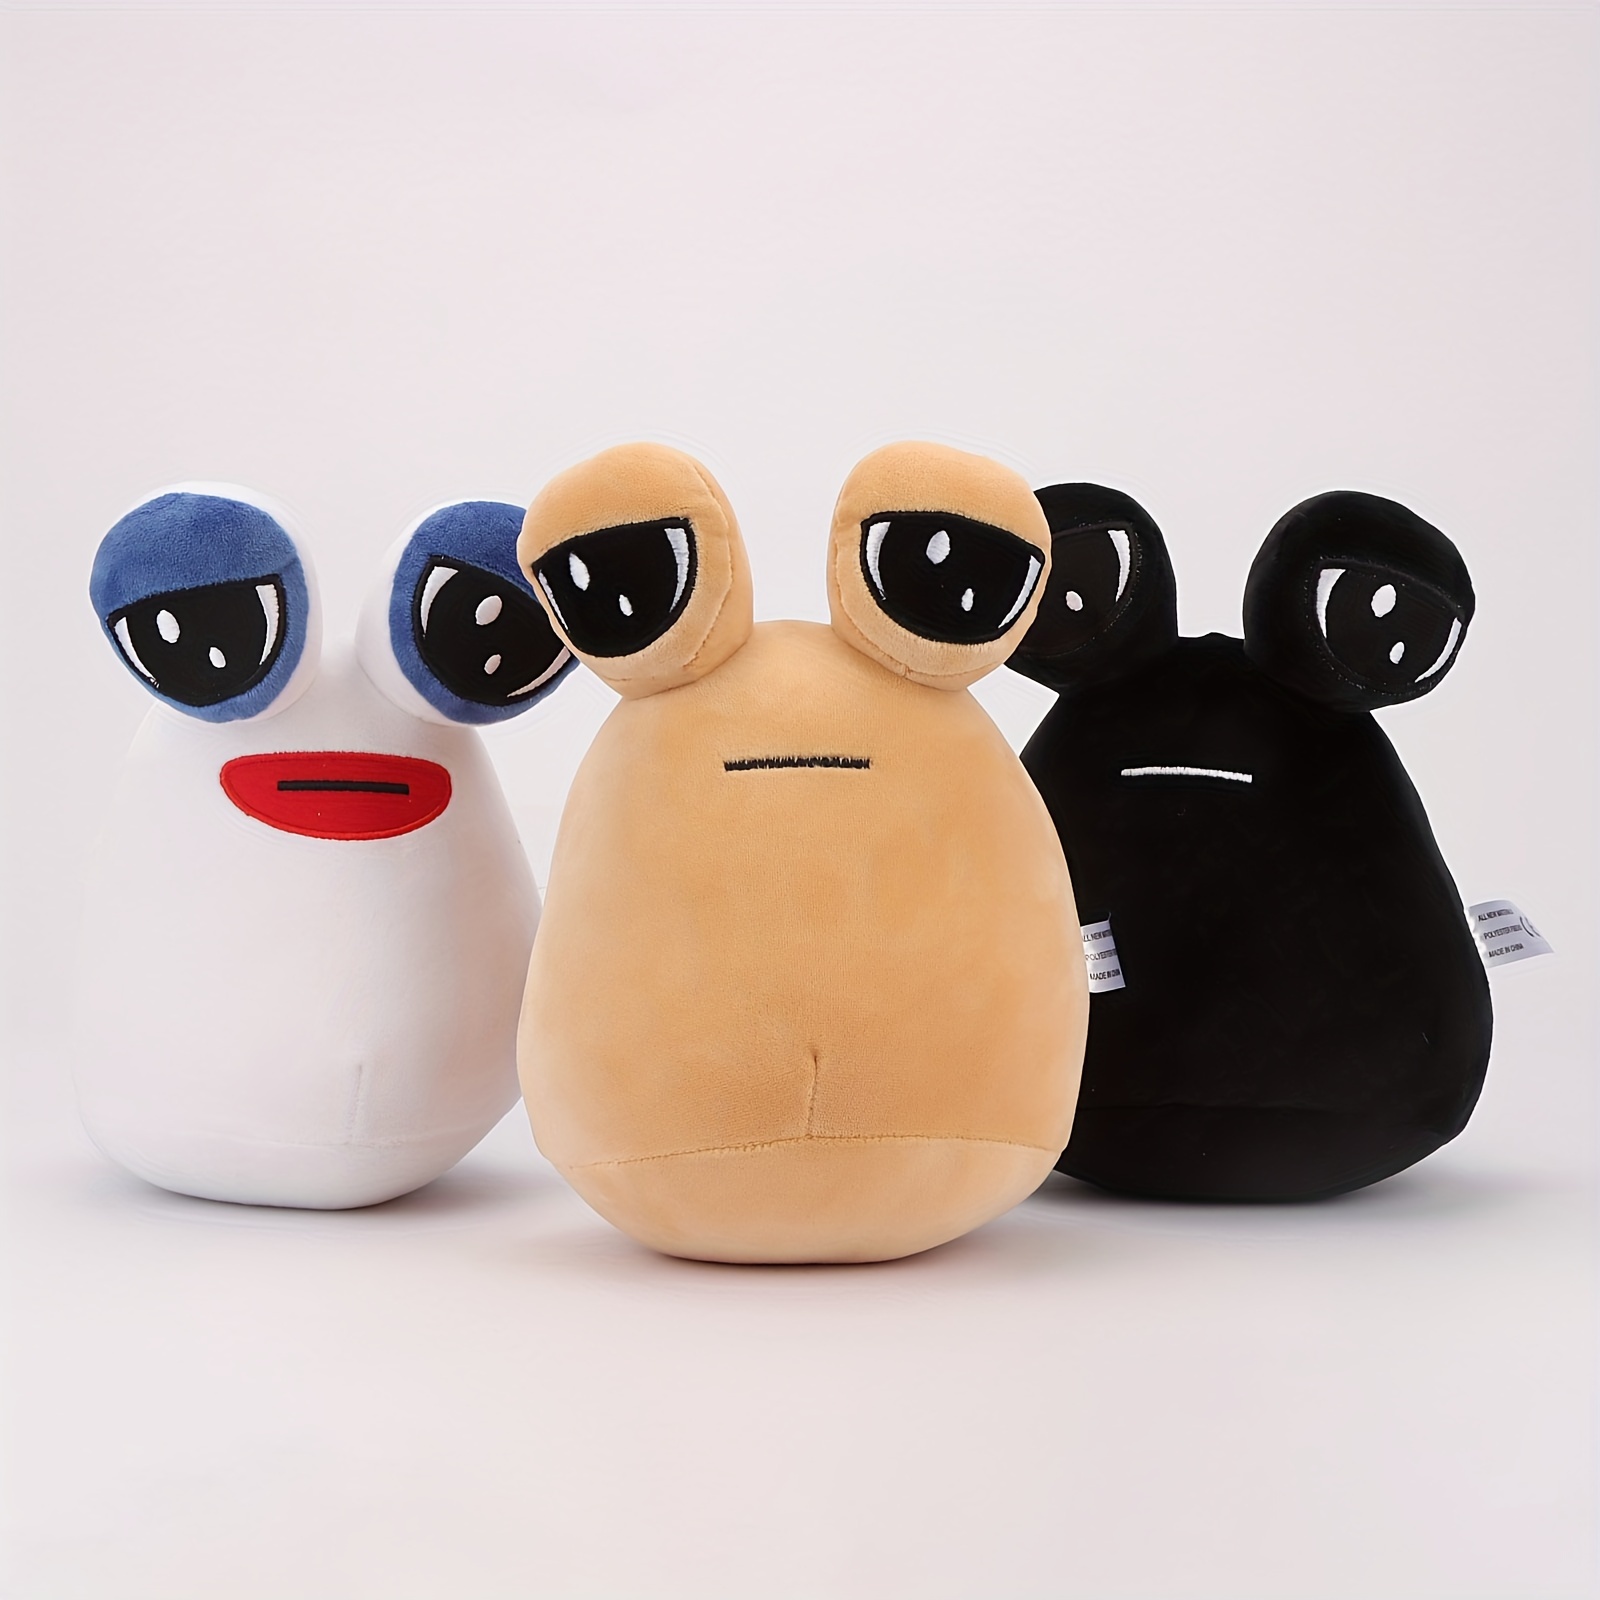 3pcs Pou Plush, Alien Pou Plush Toy,Kawaii Alien Stuffed Plush Doll Game  Plush Animal Pou Doll Birthday,22cm/8.6inch